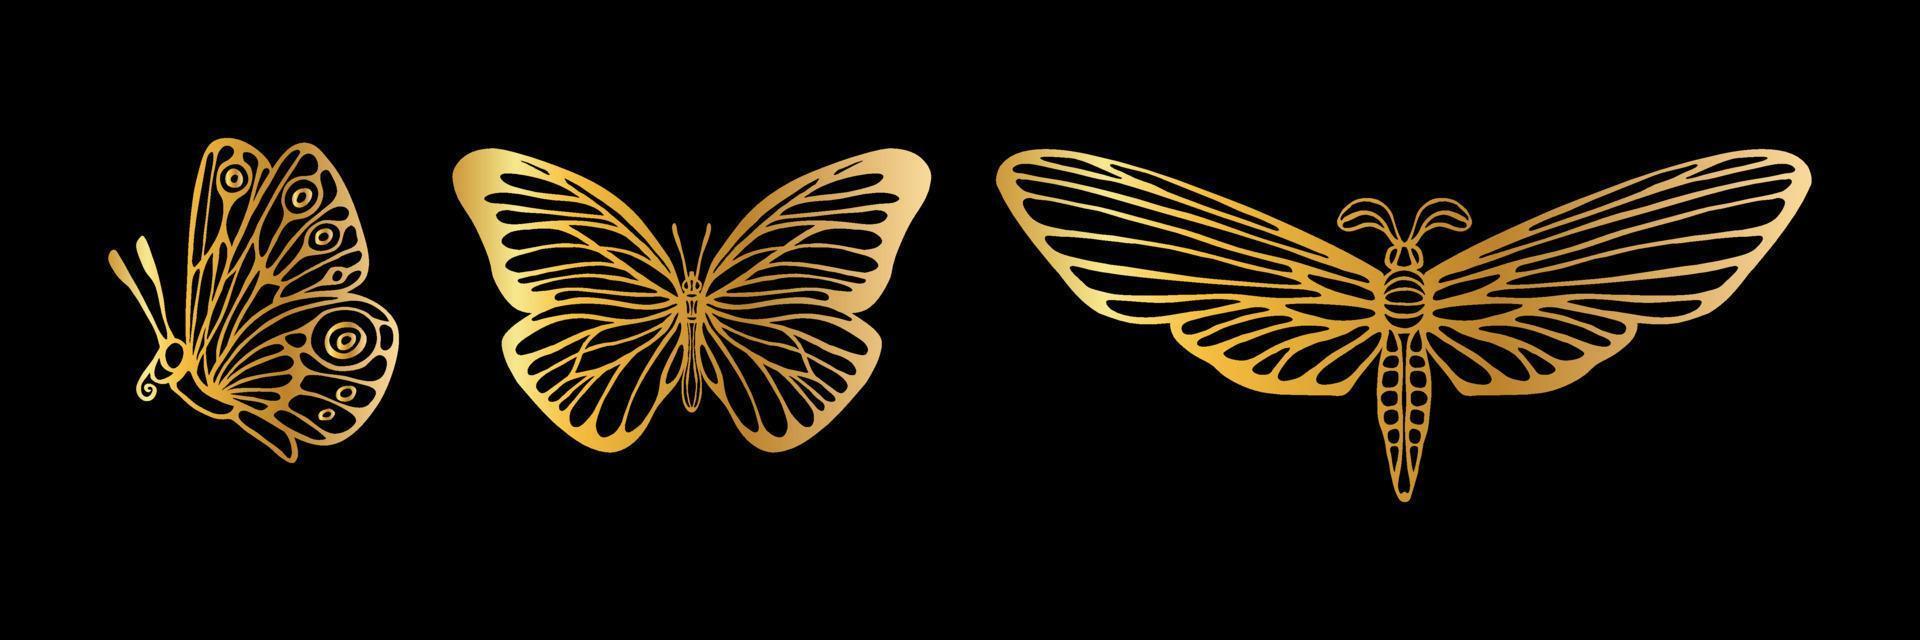 Satz goldene Schmetterlinge vektor